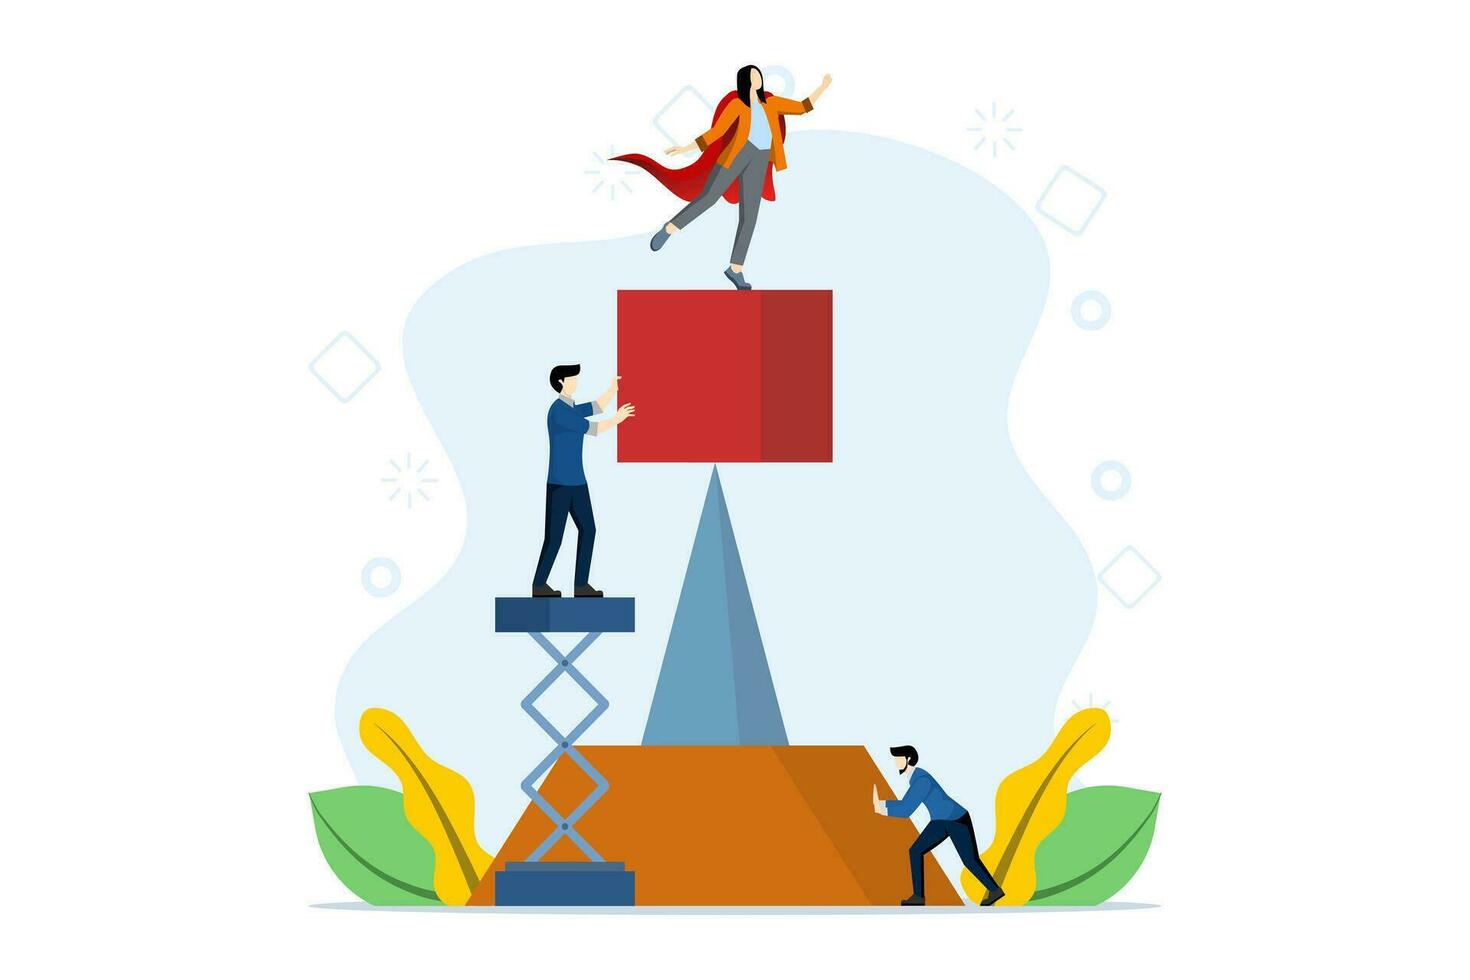 lagarbete begrepp kreativ människor arbetssätt tillsammans till uppnå mål, pyramid byggnad en framgångsrik dröm team, kvinna ledare i röd täcka stående på topp, företag utveckling lagarbete. vektor